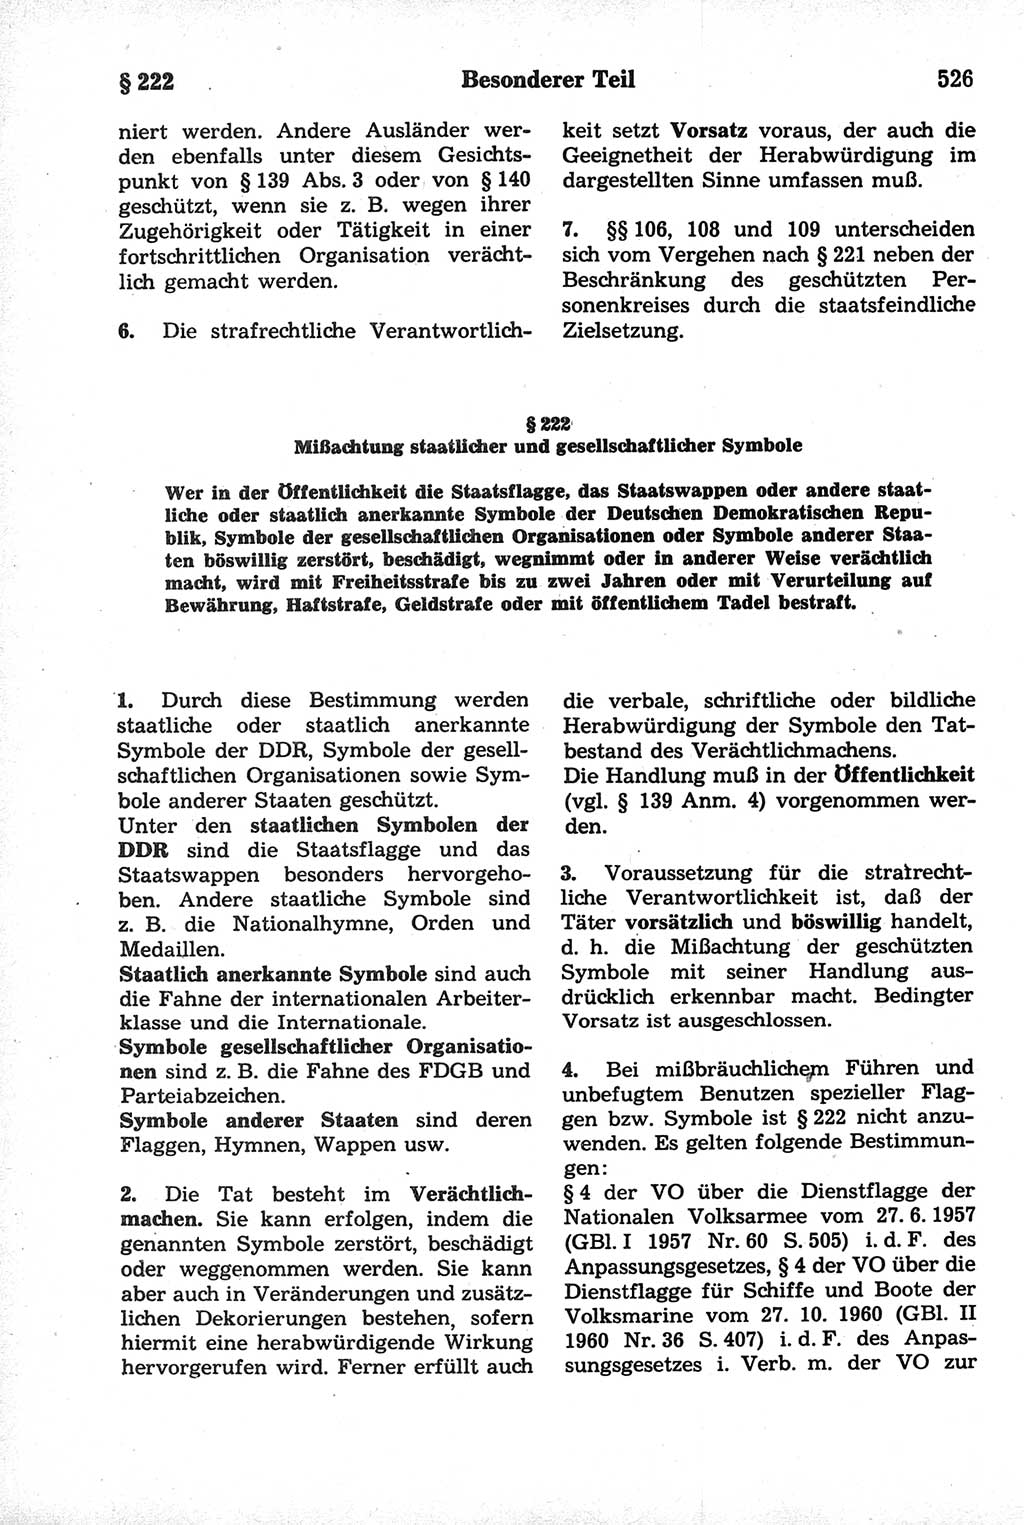 Strafrecht der Deutschen Demokratischen Republik (DDR), Kommentar zum Strafgesetzbuch (StGB) 1981, Seite 526 (Strafr. DDR Komm. StGB 1981, S. 526)